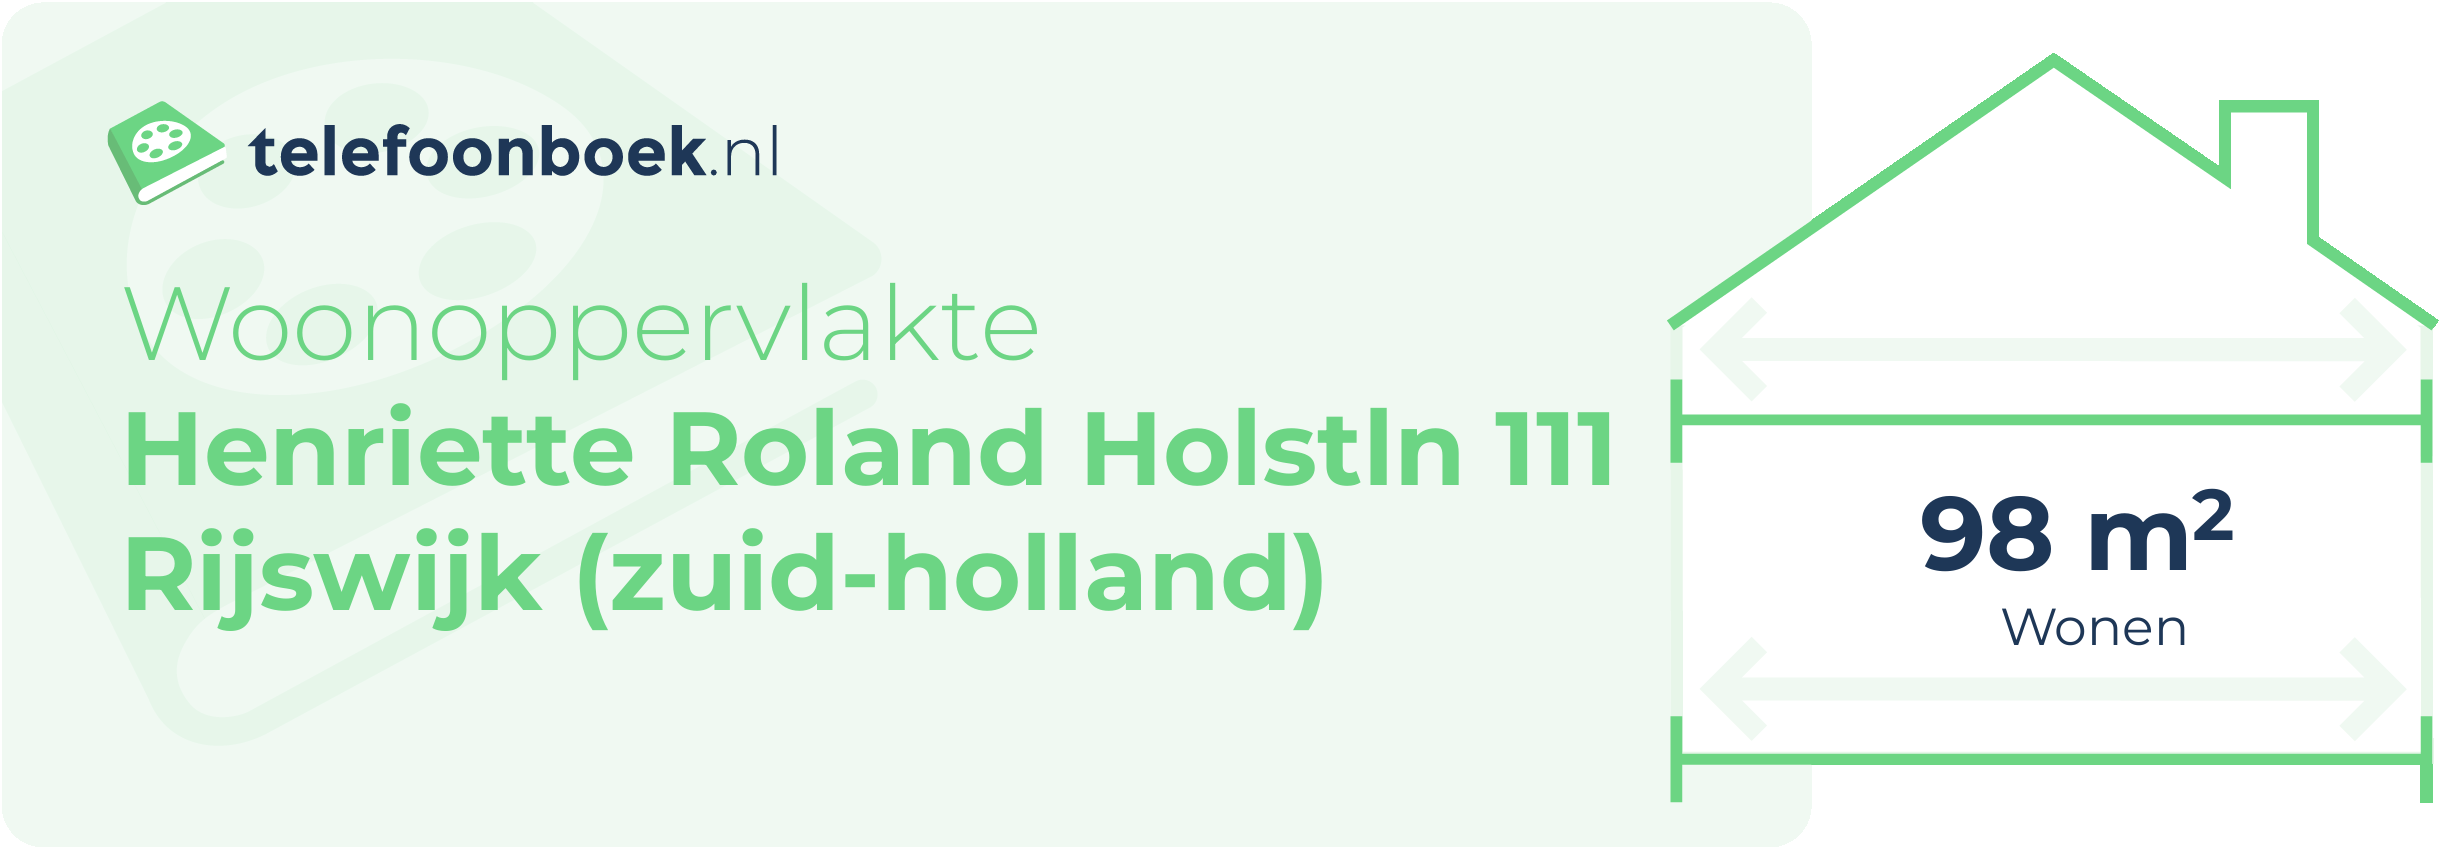 Woonoppervlakte Henriette Roland Holstln 111 Rijswijk (Zuid-Holland)